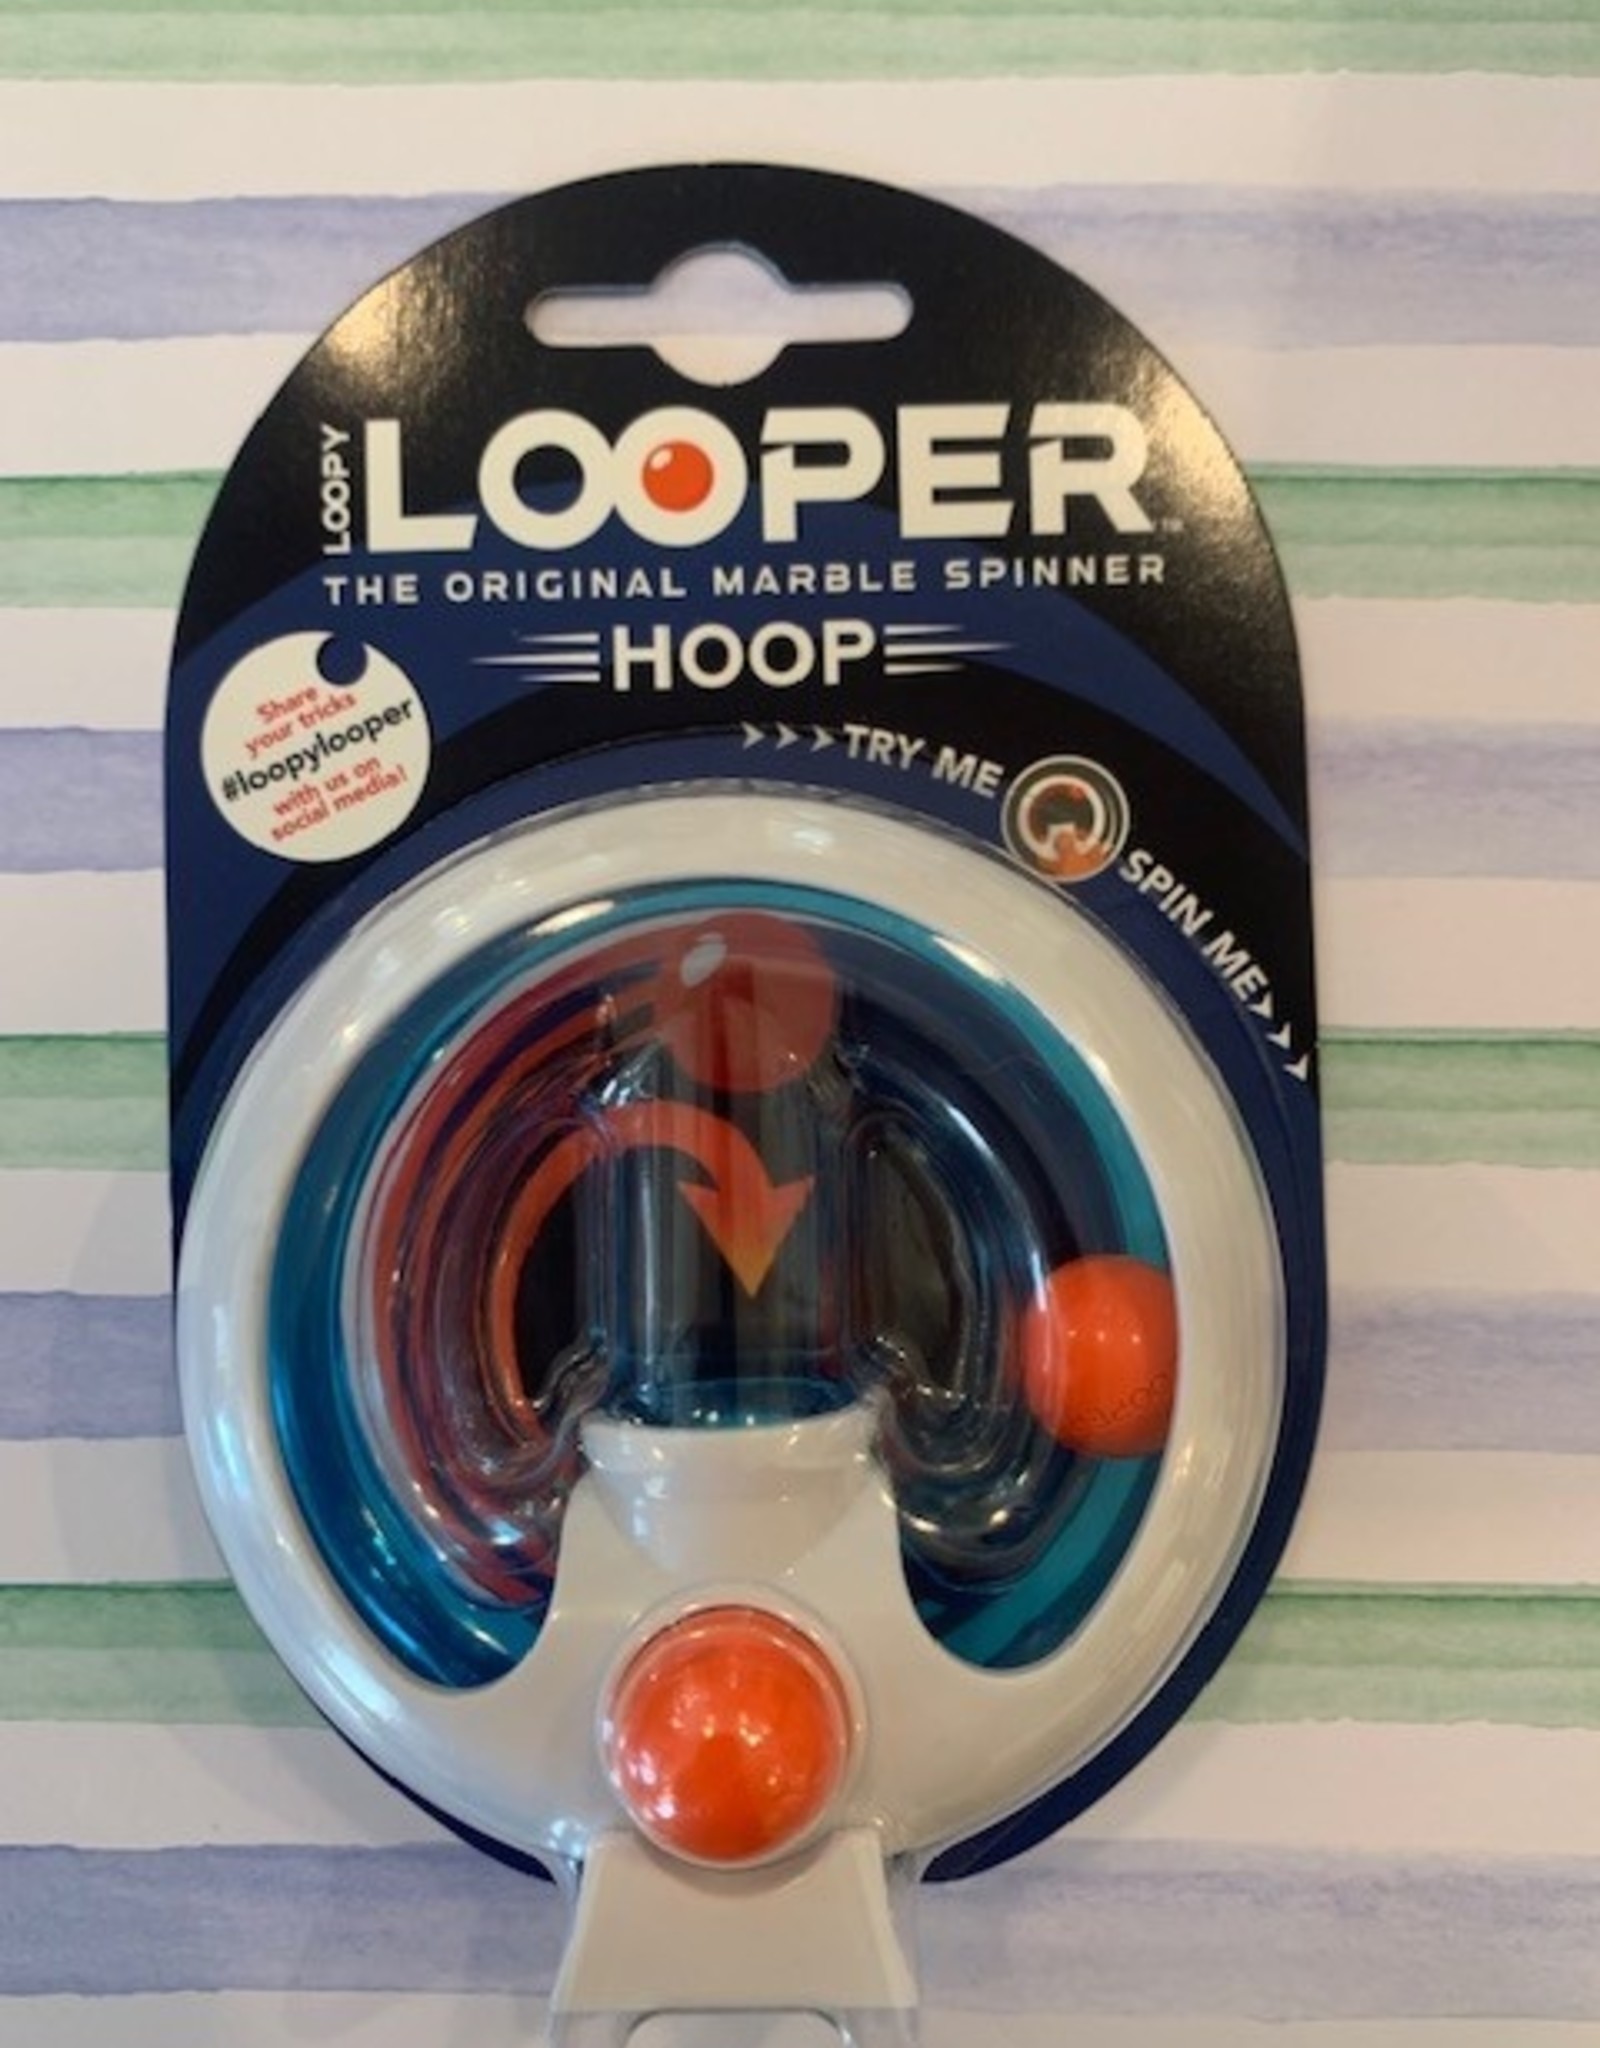 Outset media Loopy Loopers